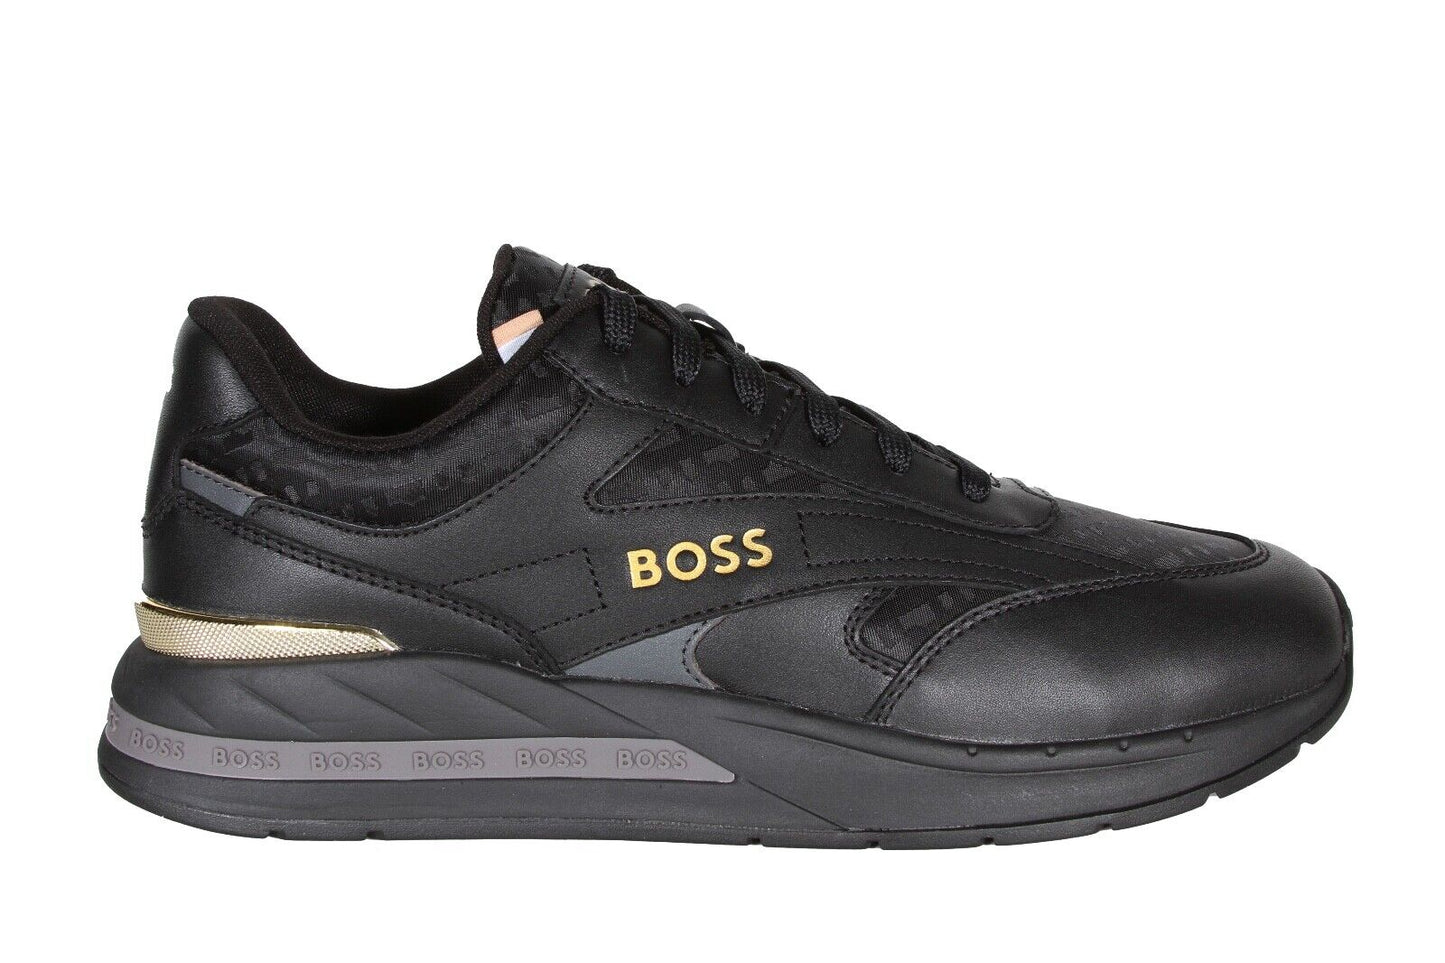 HUGO BOSS Kurt_Runn_mnmx Men’s Sneakers in Black 50502901-007